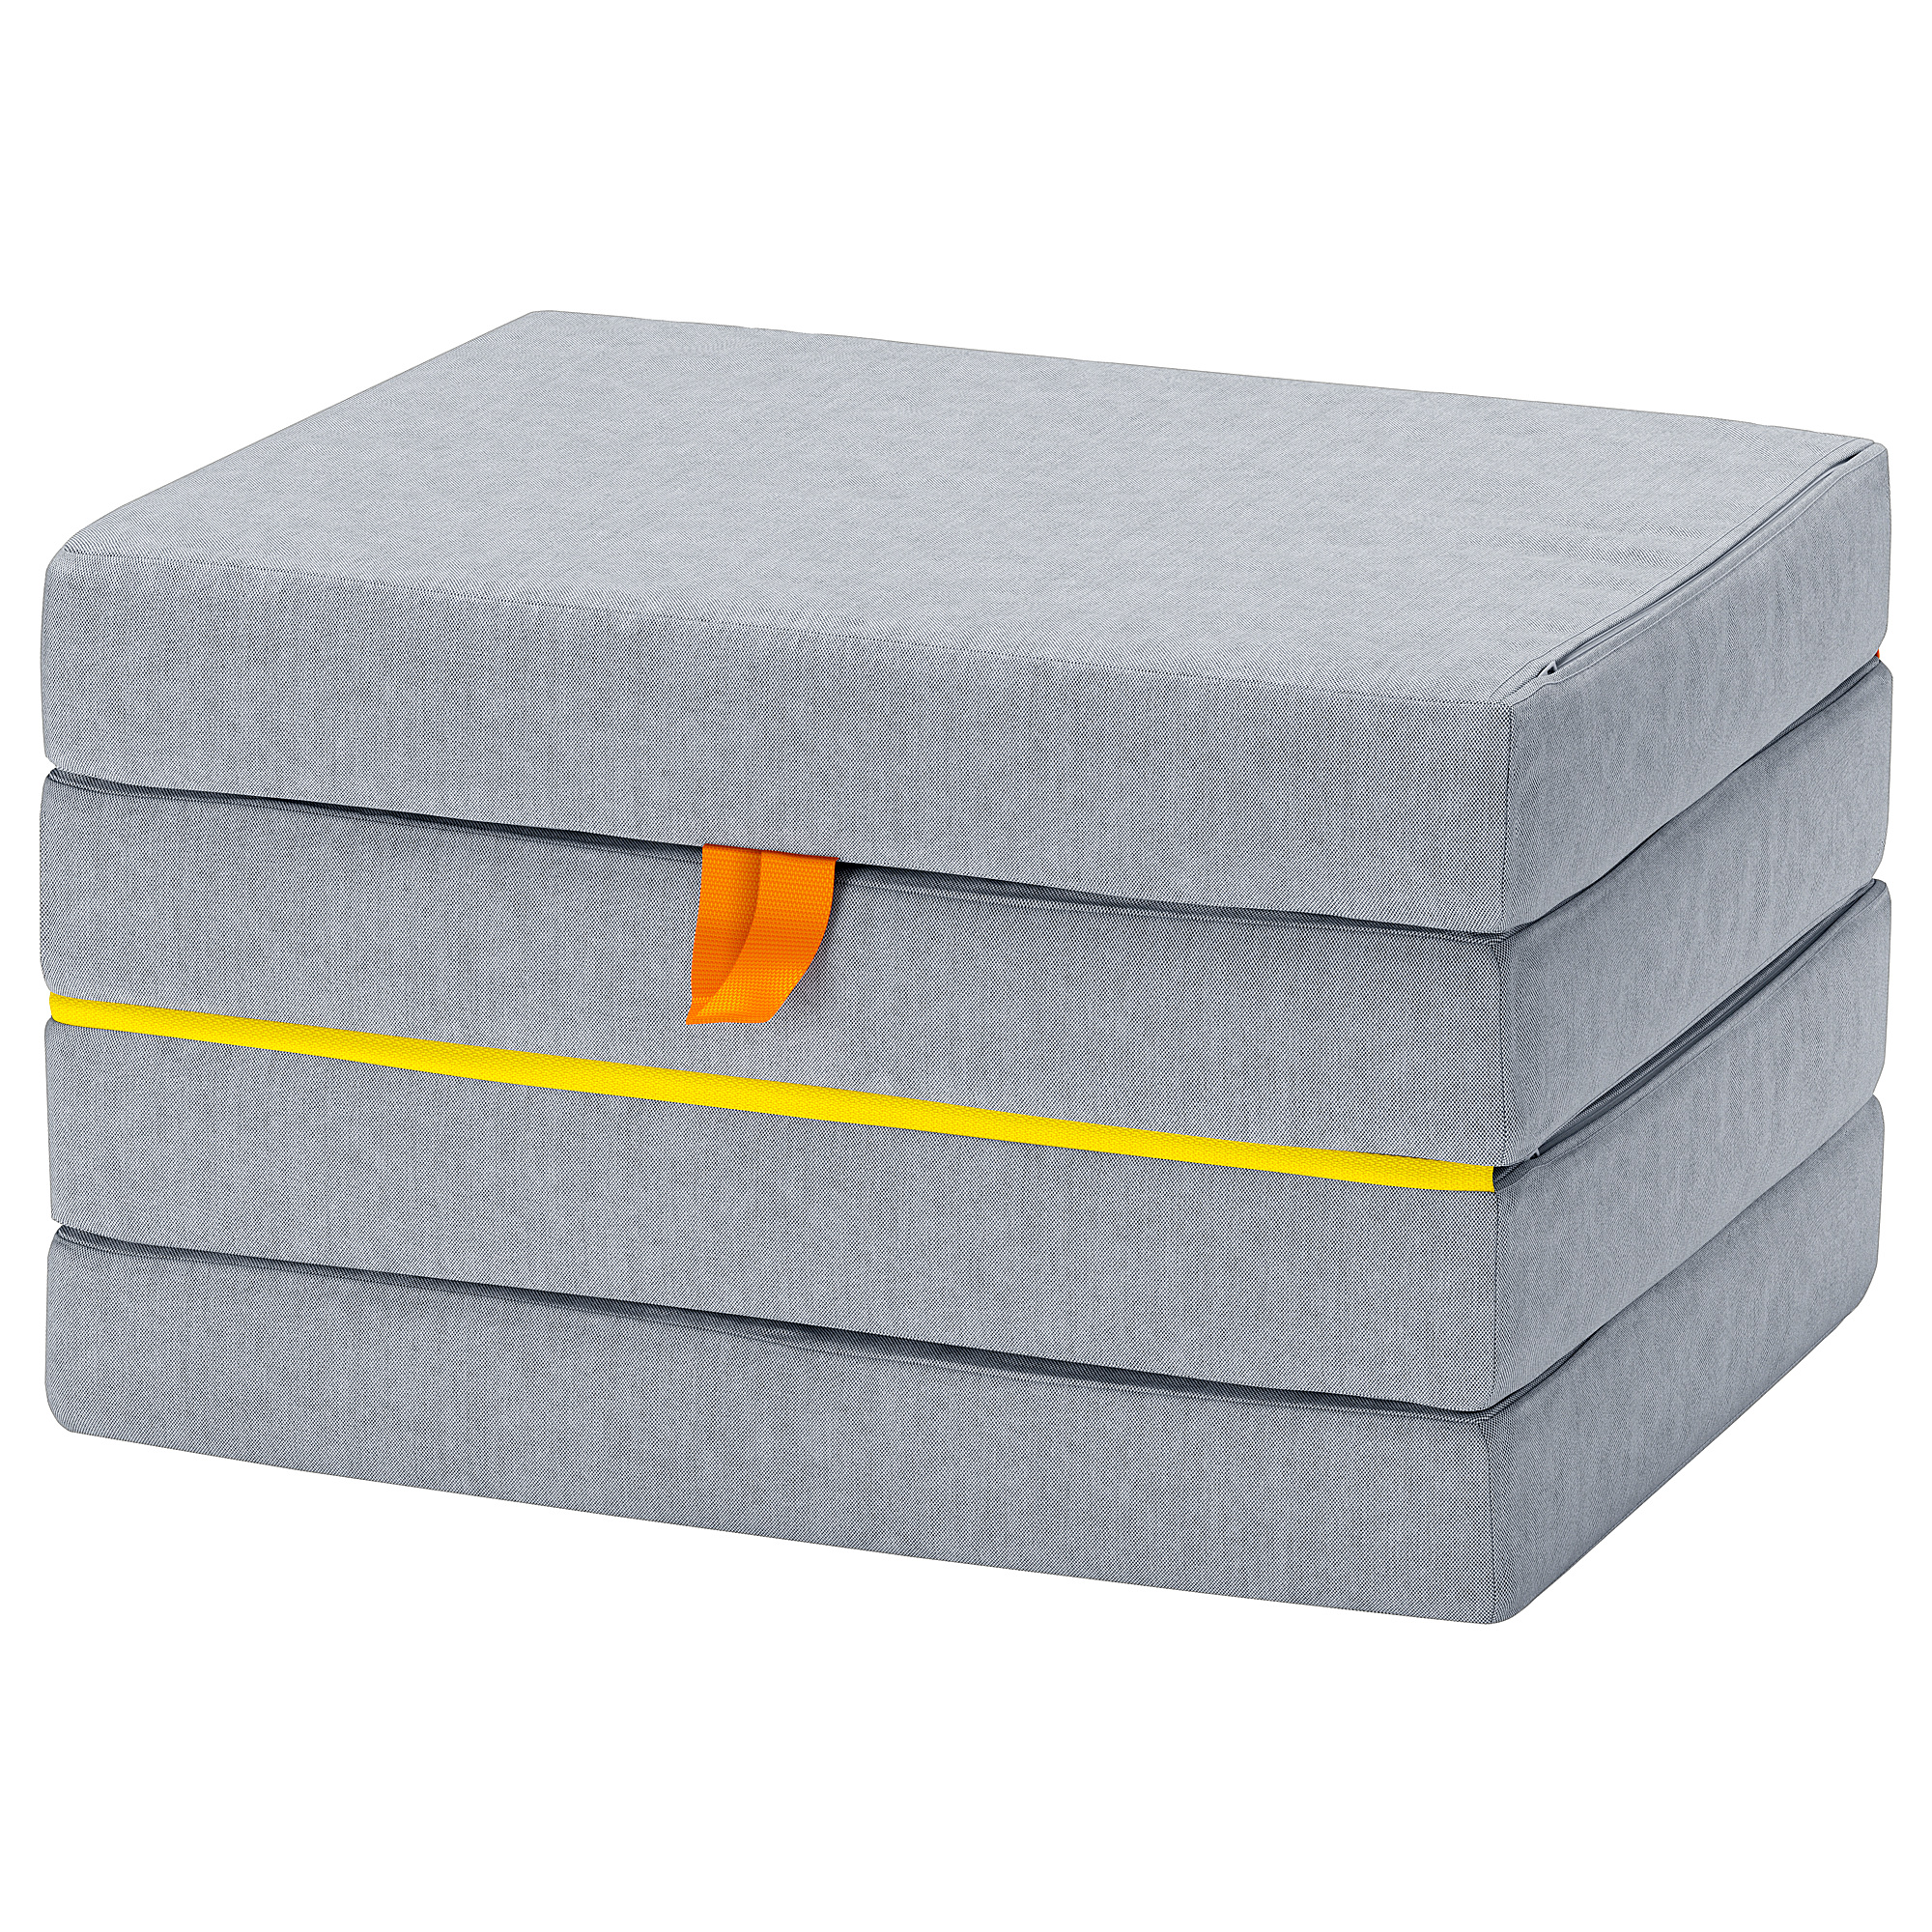 SLÄKT pouffe/mattress, foldable